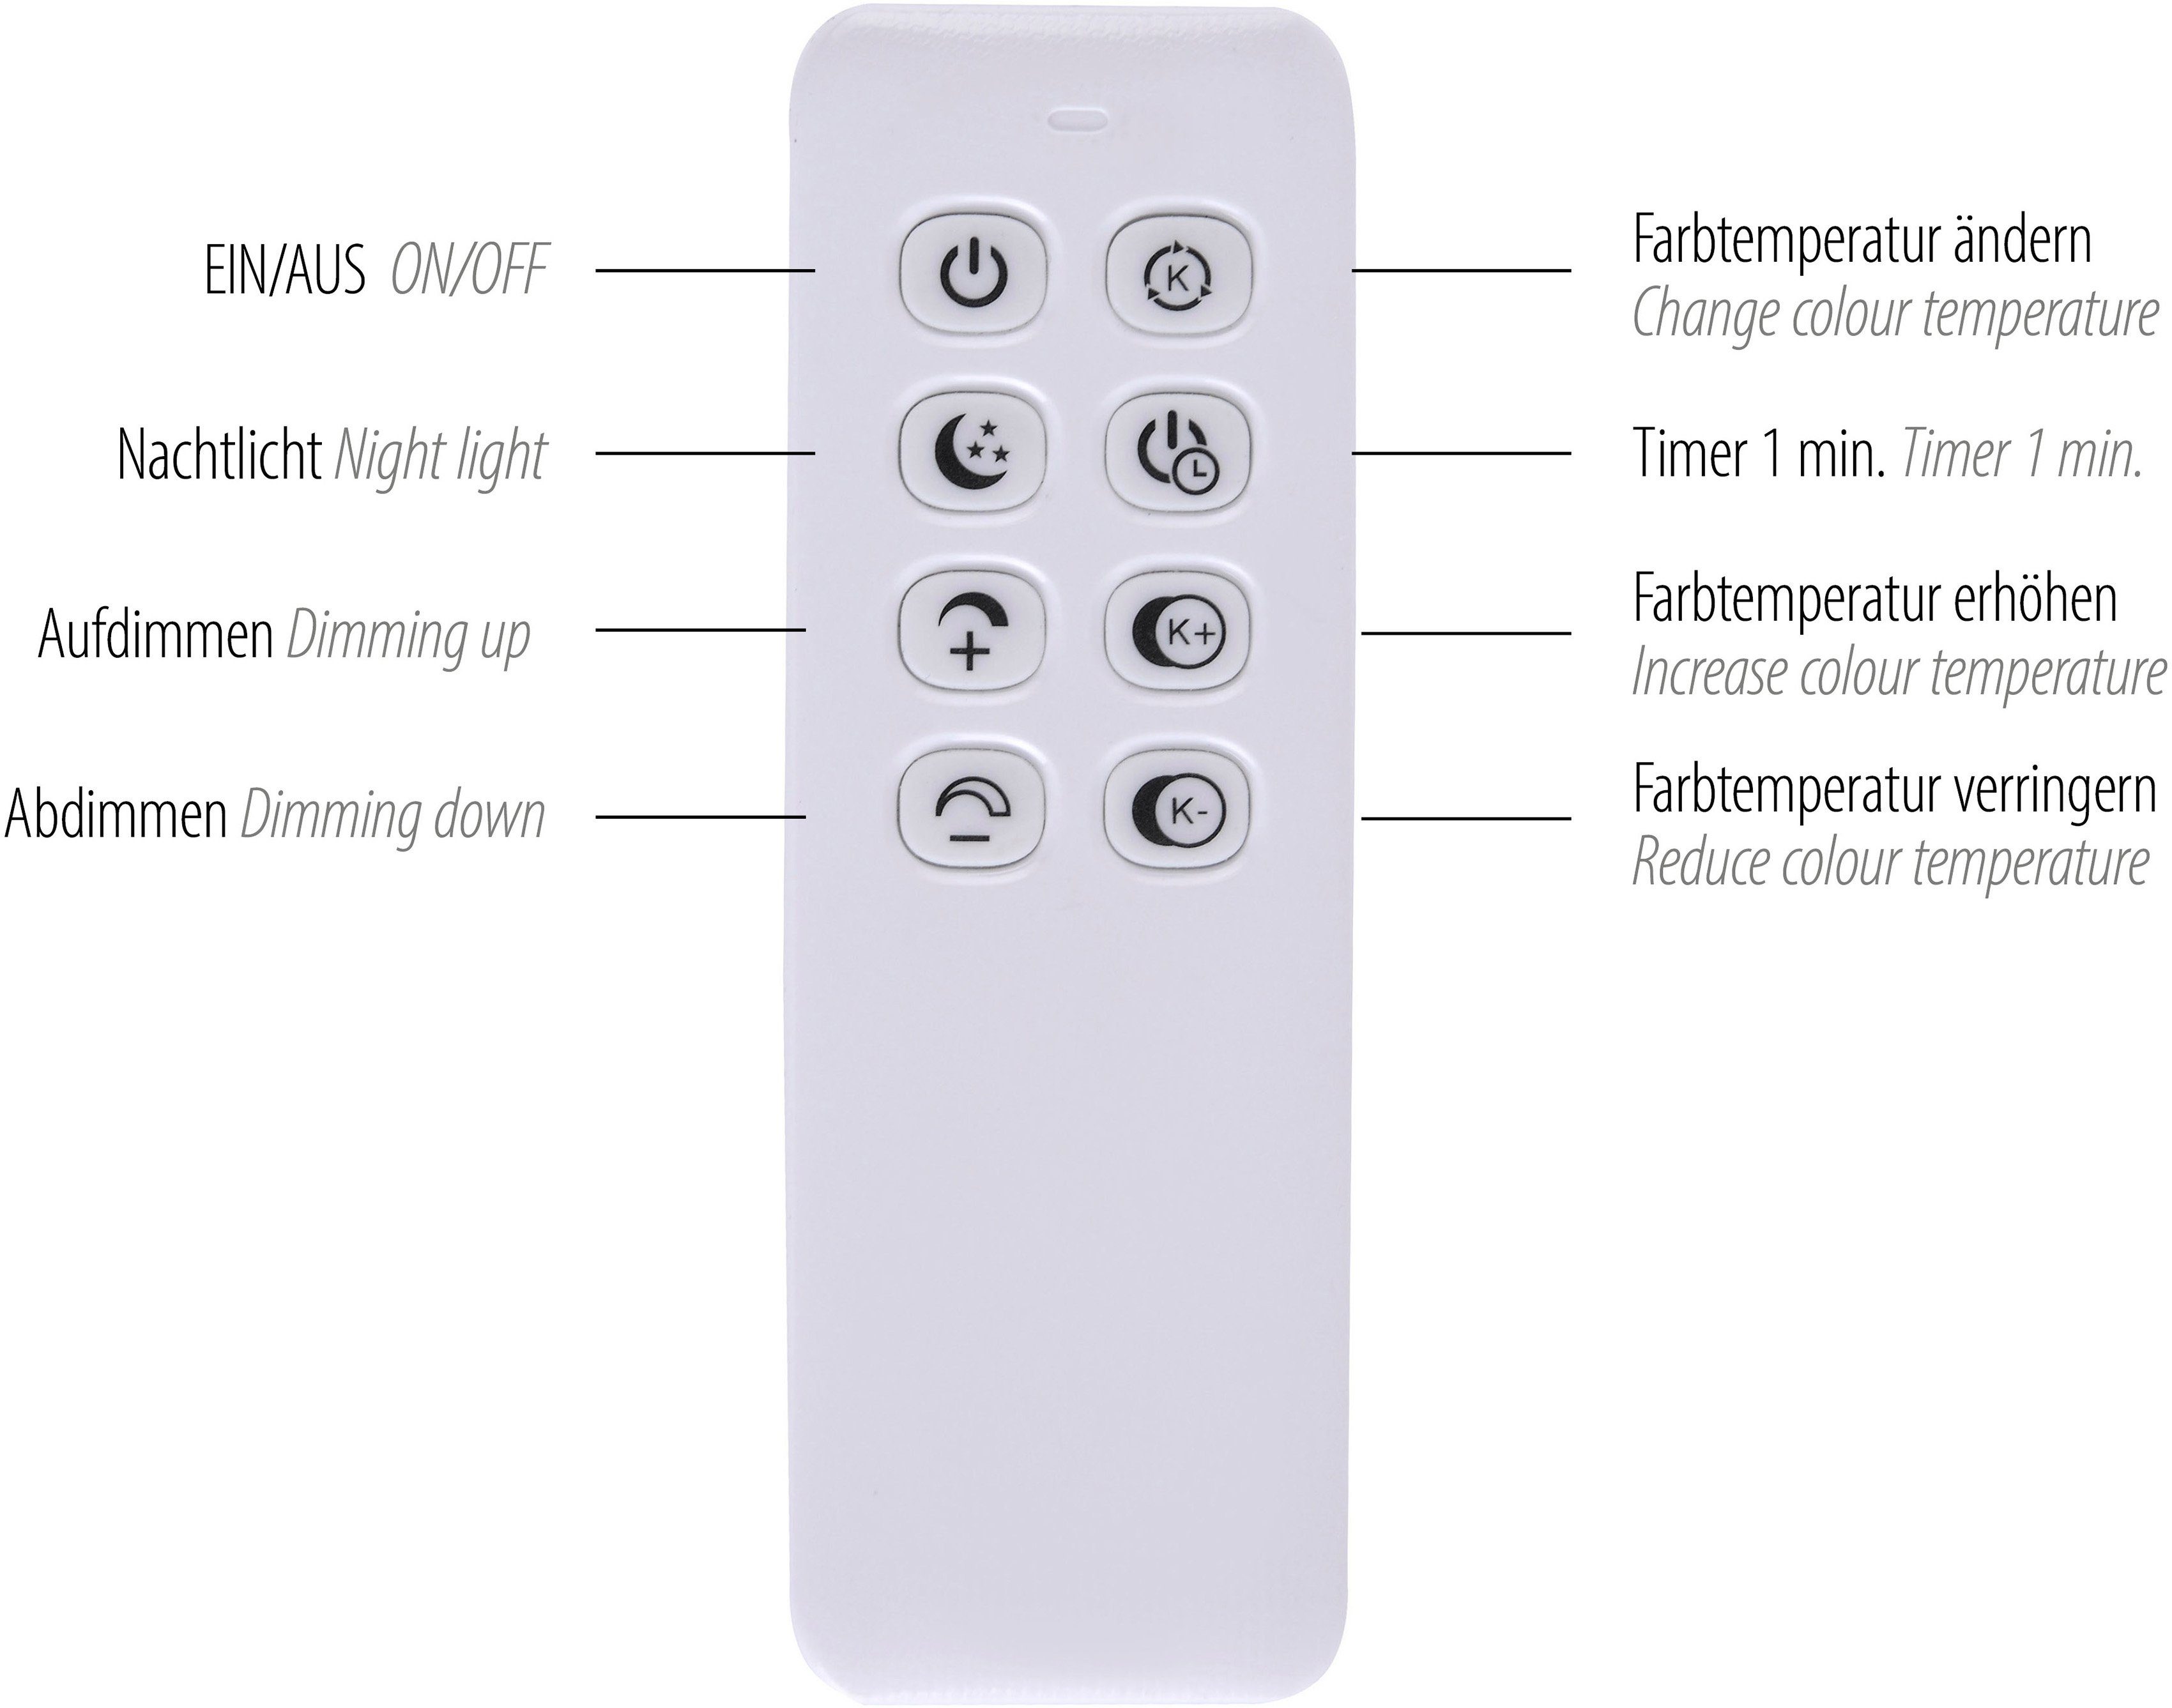 LED integriert, - mit dimmbar inkl. affaire Home Pendelleuchte warmweiß Hängelampe Ablage, Fernbed., über fest kaltweiß, Pommerby, Farbtemperatursteuerung Fernbedienung, LED